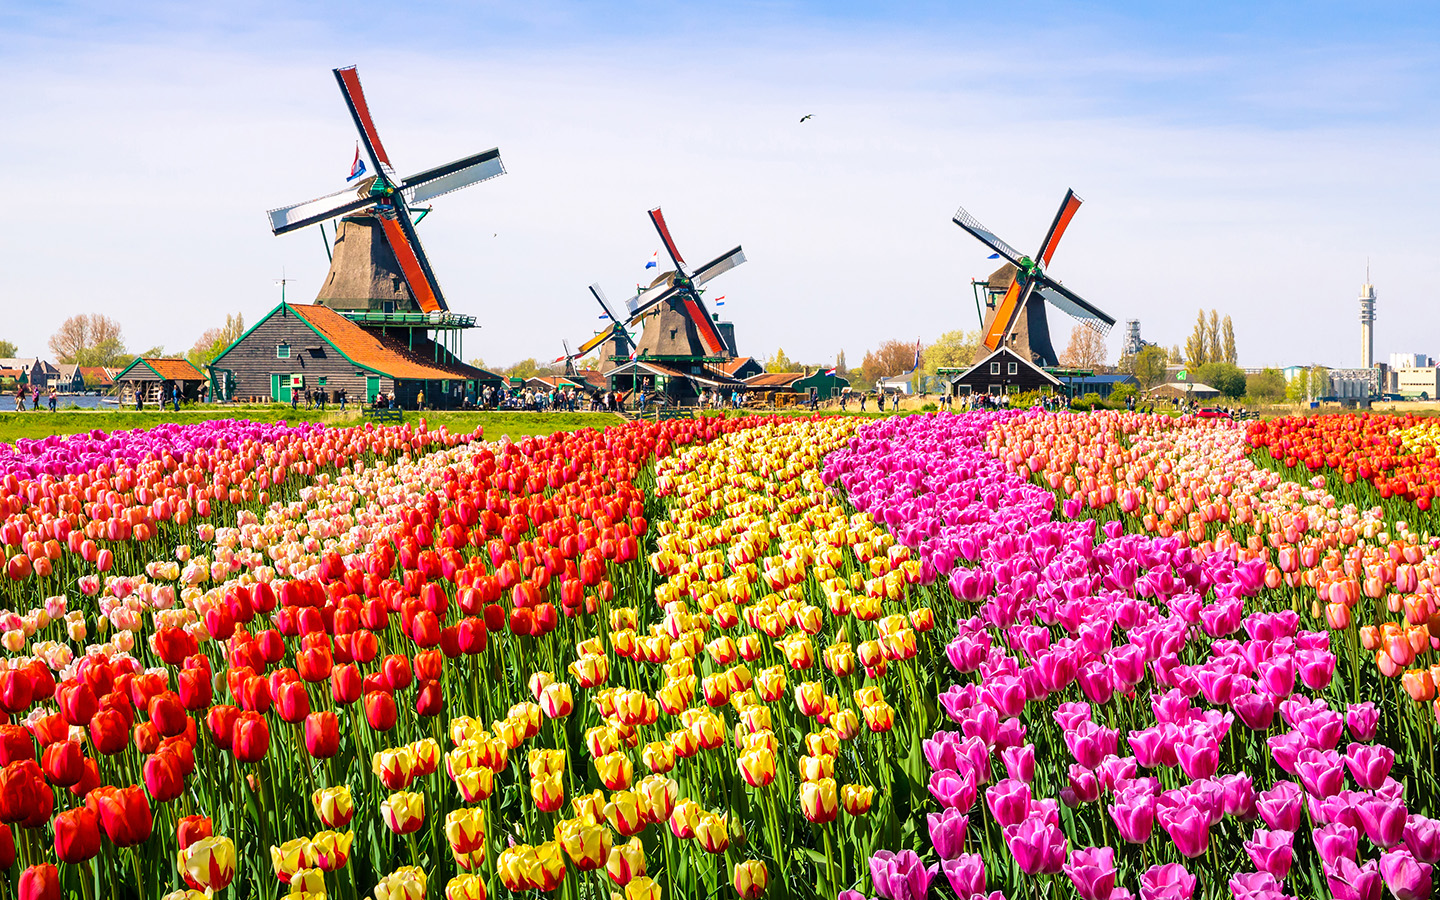 Landschaft mit Tulpen, traditionellen Windmühlen und Häusern in der Nähe des Kanals in Zaanse Schans, Niederlande